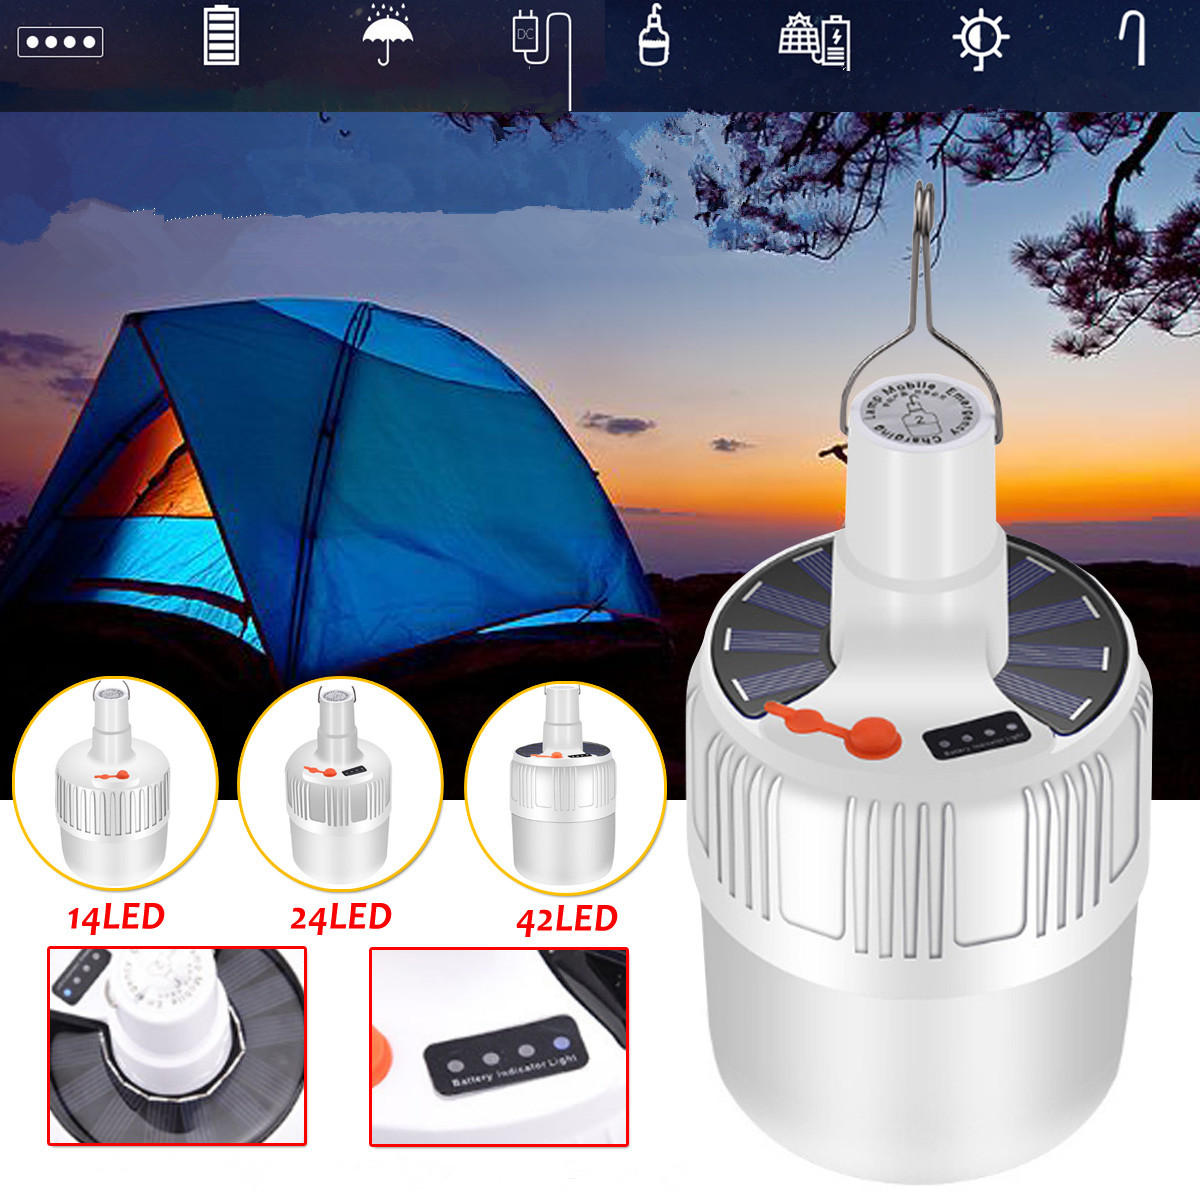 Bombilla LED recargable por USB, impermeable, 5 modos de luz solar para camping y emergencias al aire libre